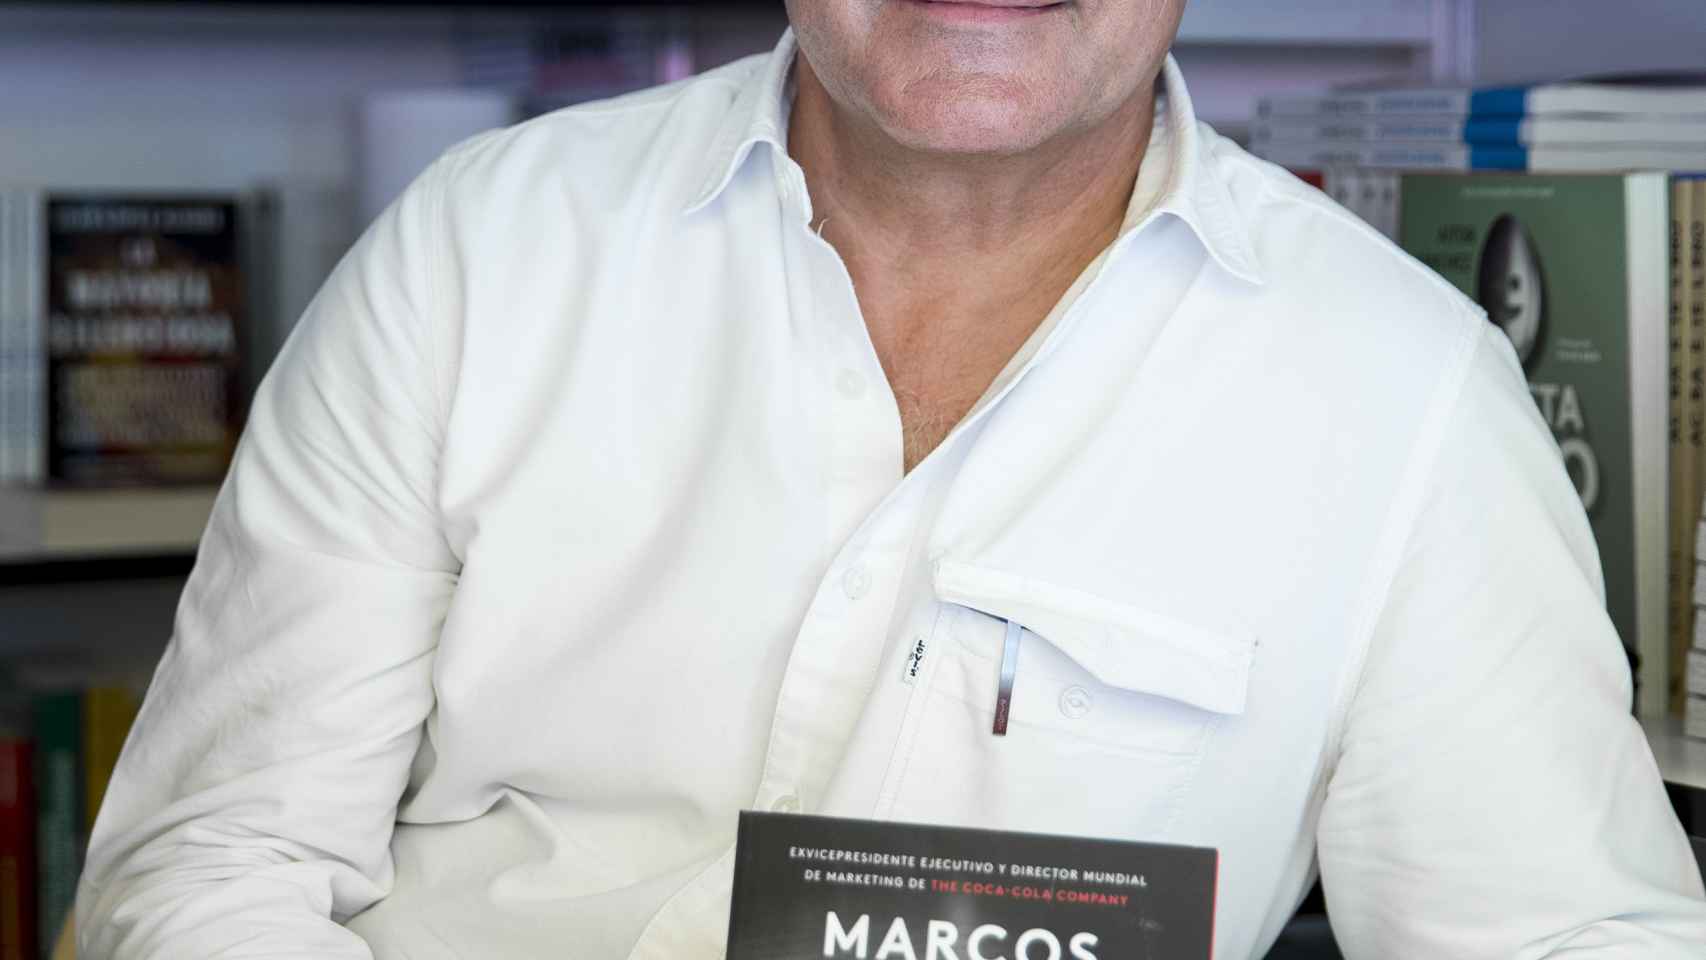 El ex vicepresidente ejecutivo de The Coca-Cola Company, Marcos de Quinto.